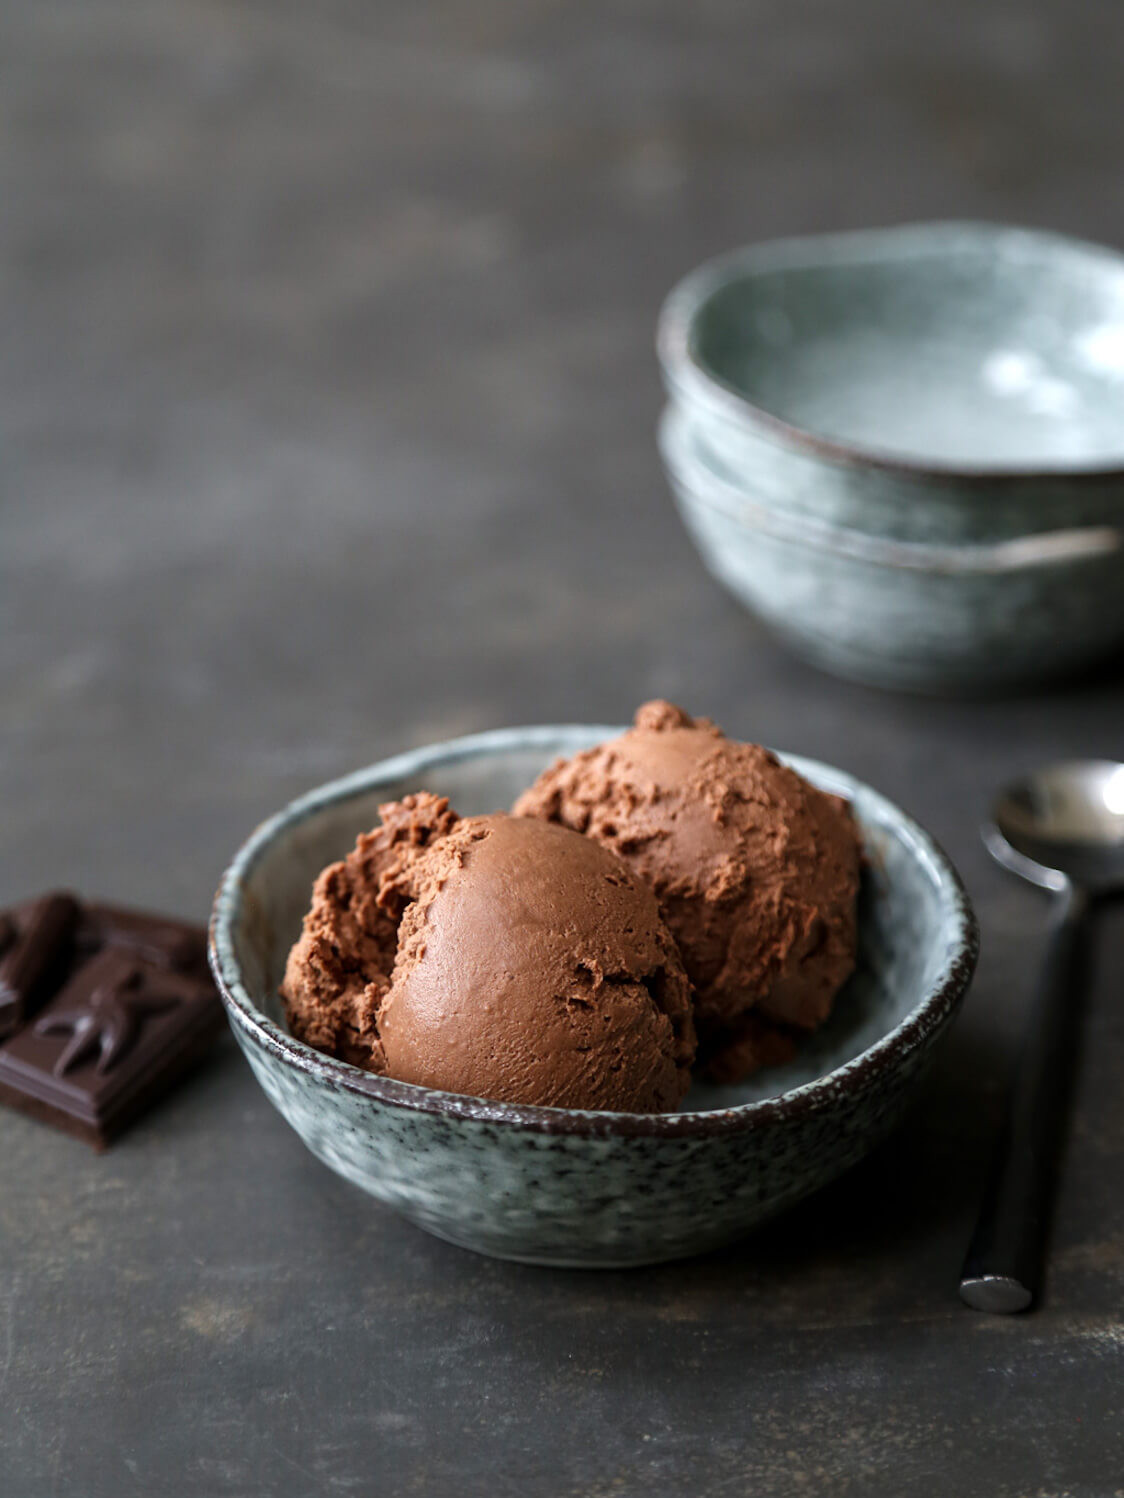 Keto Diet Ice Cream Recipe
 No Churn Keto Chocolate Ice Cream